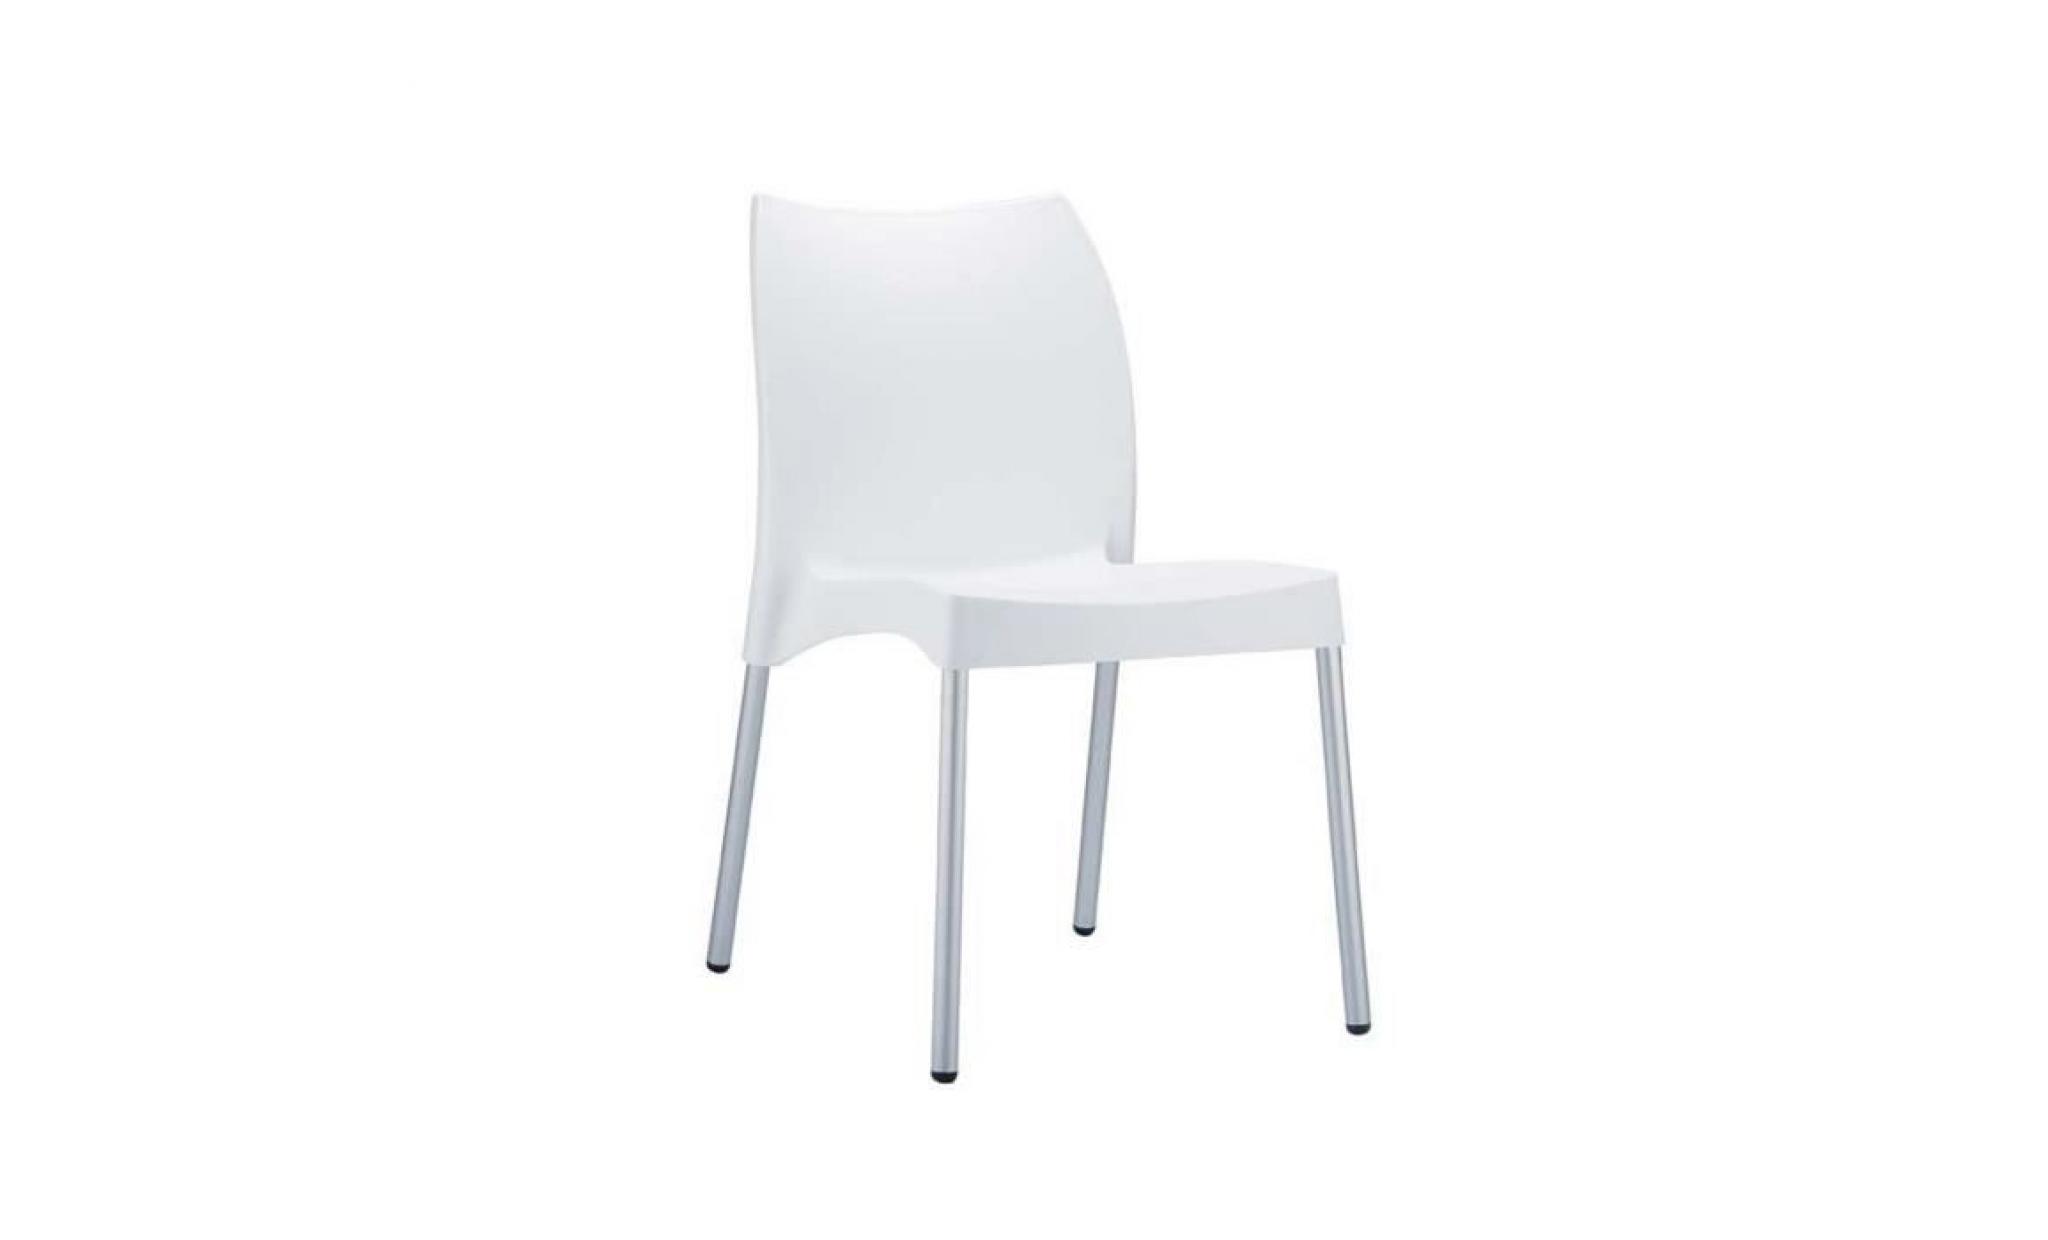 chaise de jardin avec siège en plastique blanc   80 x 44 x 53 cm